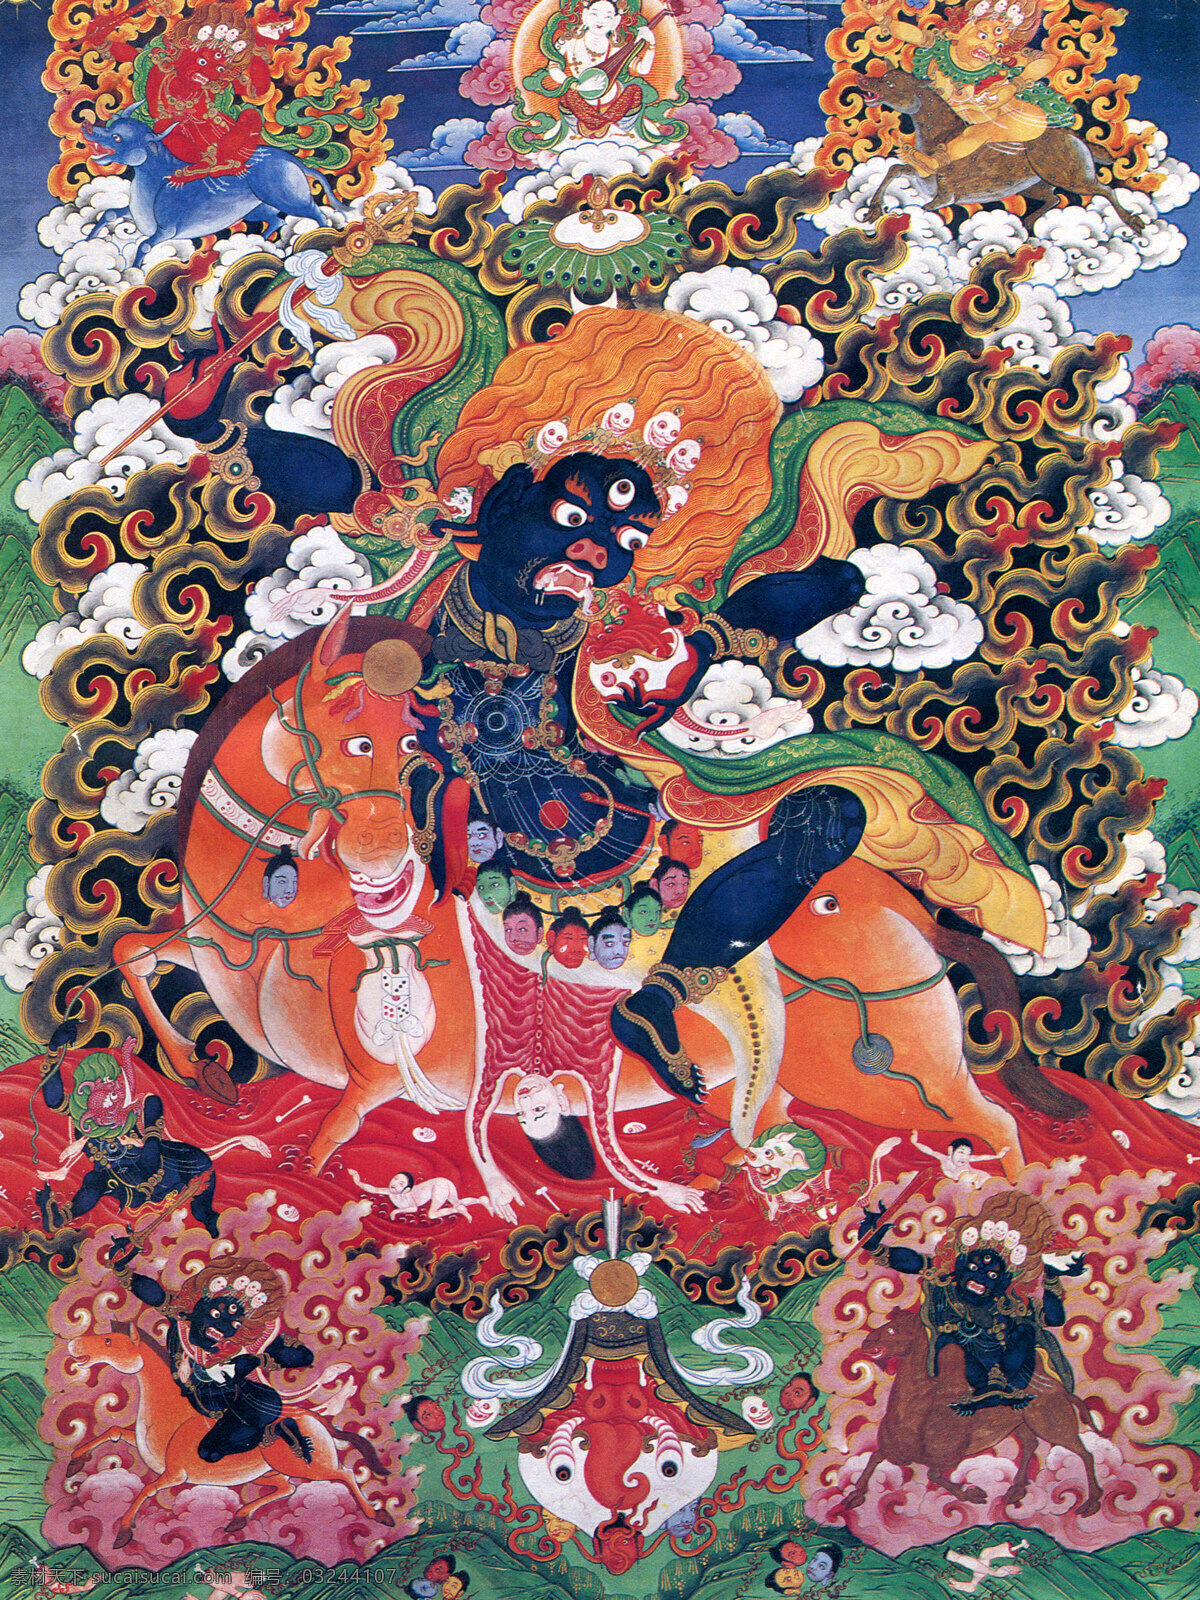 西藏 日喀则 唐卡 佛教 佛法 佛经 佛龛 唐卡全大 藏族文化01 藏族文化 宗教信仰 文化艺术